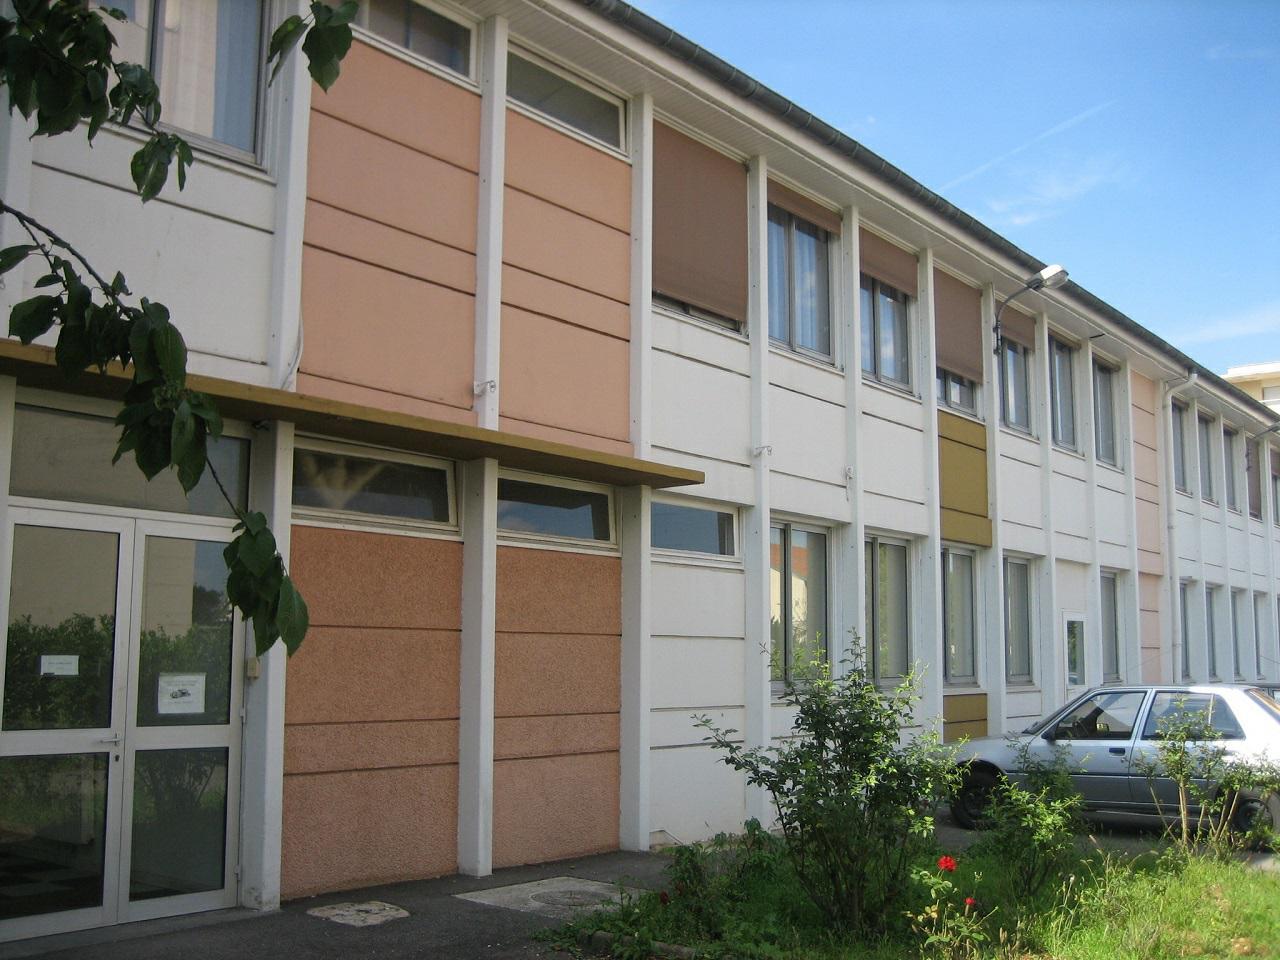 Location bureau Fontaine-lès-Dijon 81m²